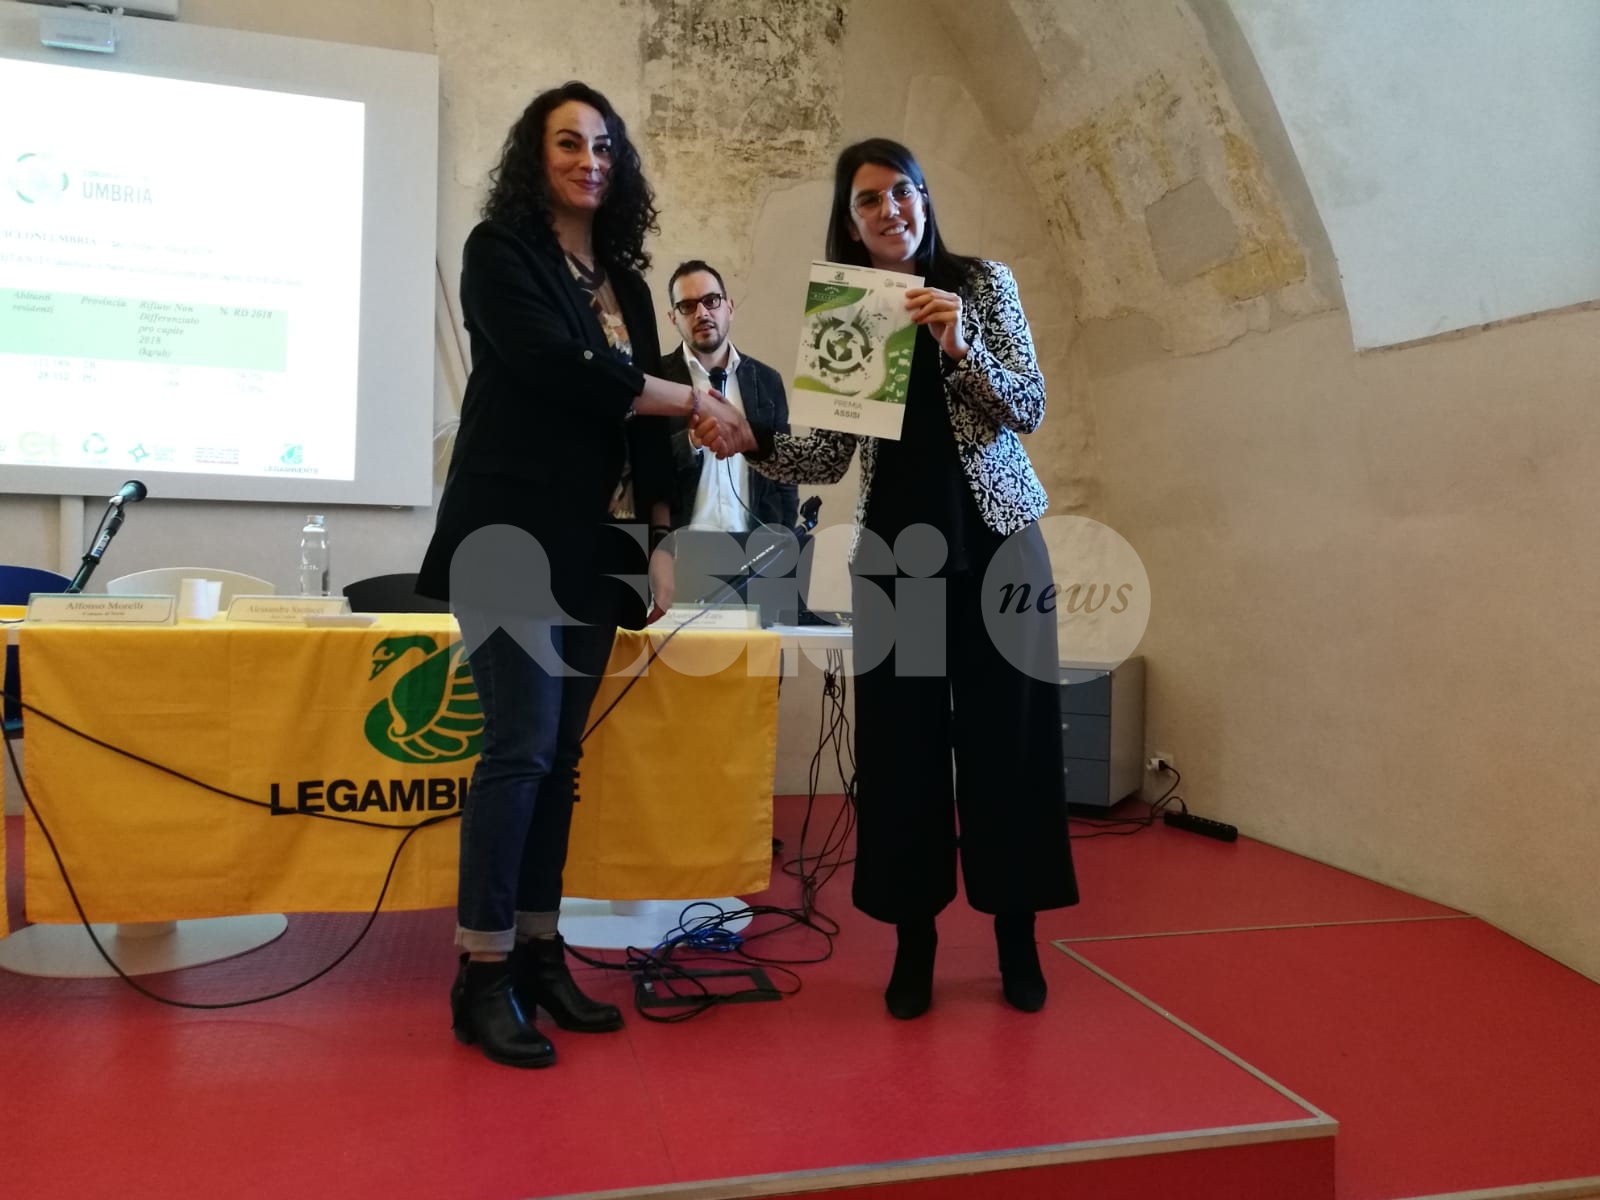 Assisi premiata a Narni come Comune Riciclone: è la prima volta - Assisi News